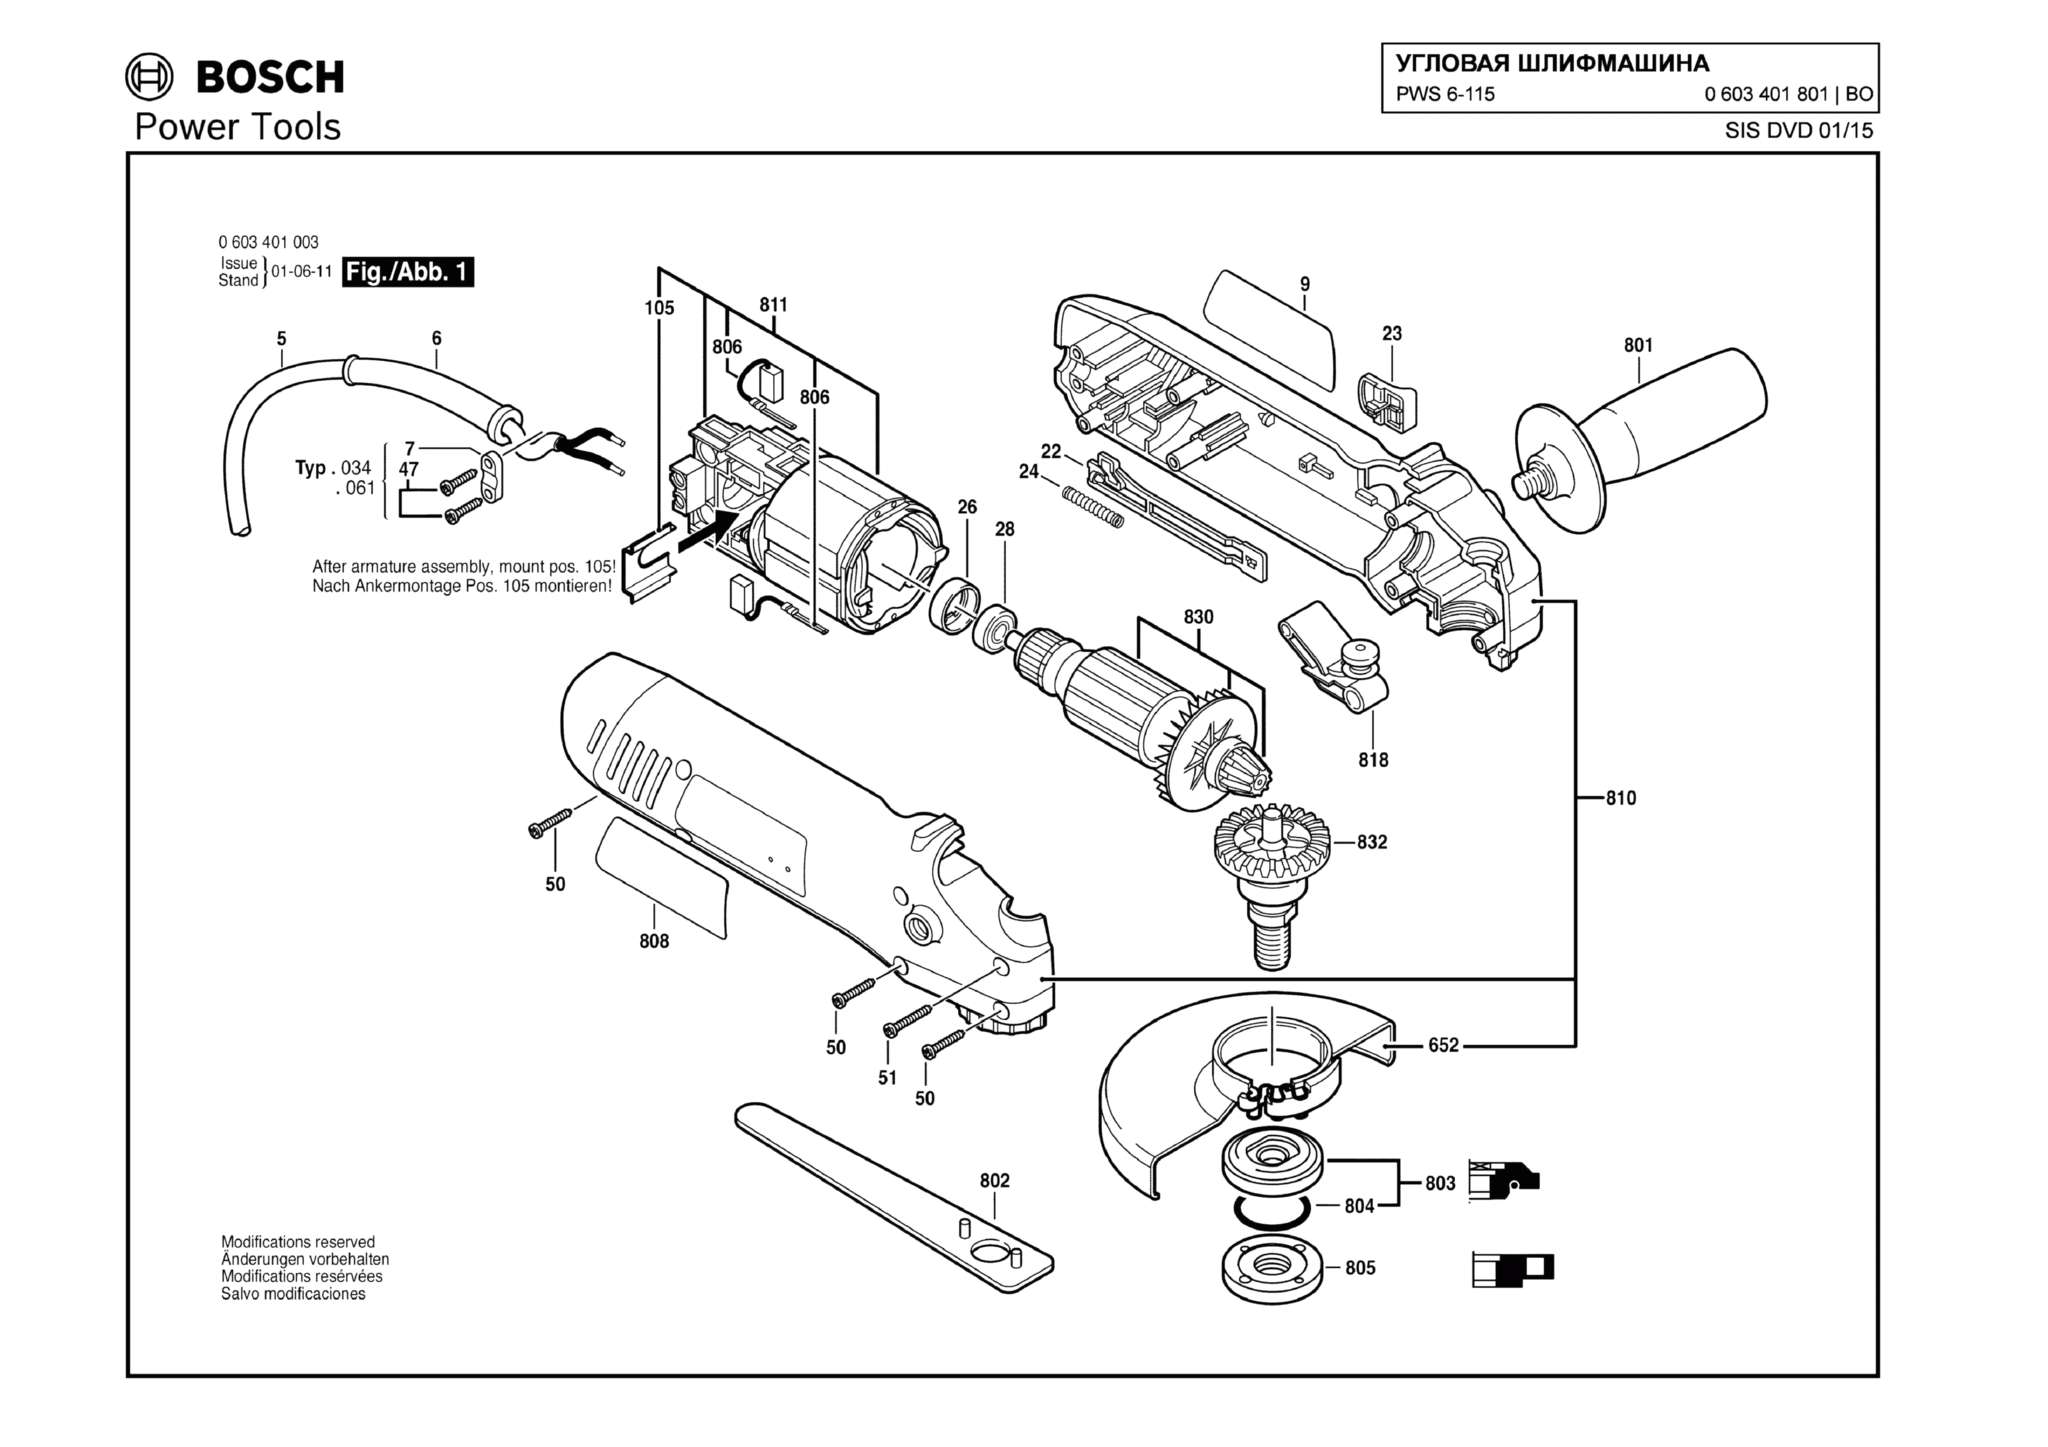 Запчасти, схема и деталировка Bosch PWS 6-115 (ТИП 0603401801)